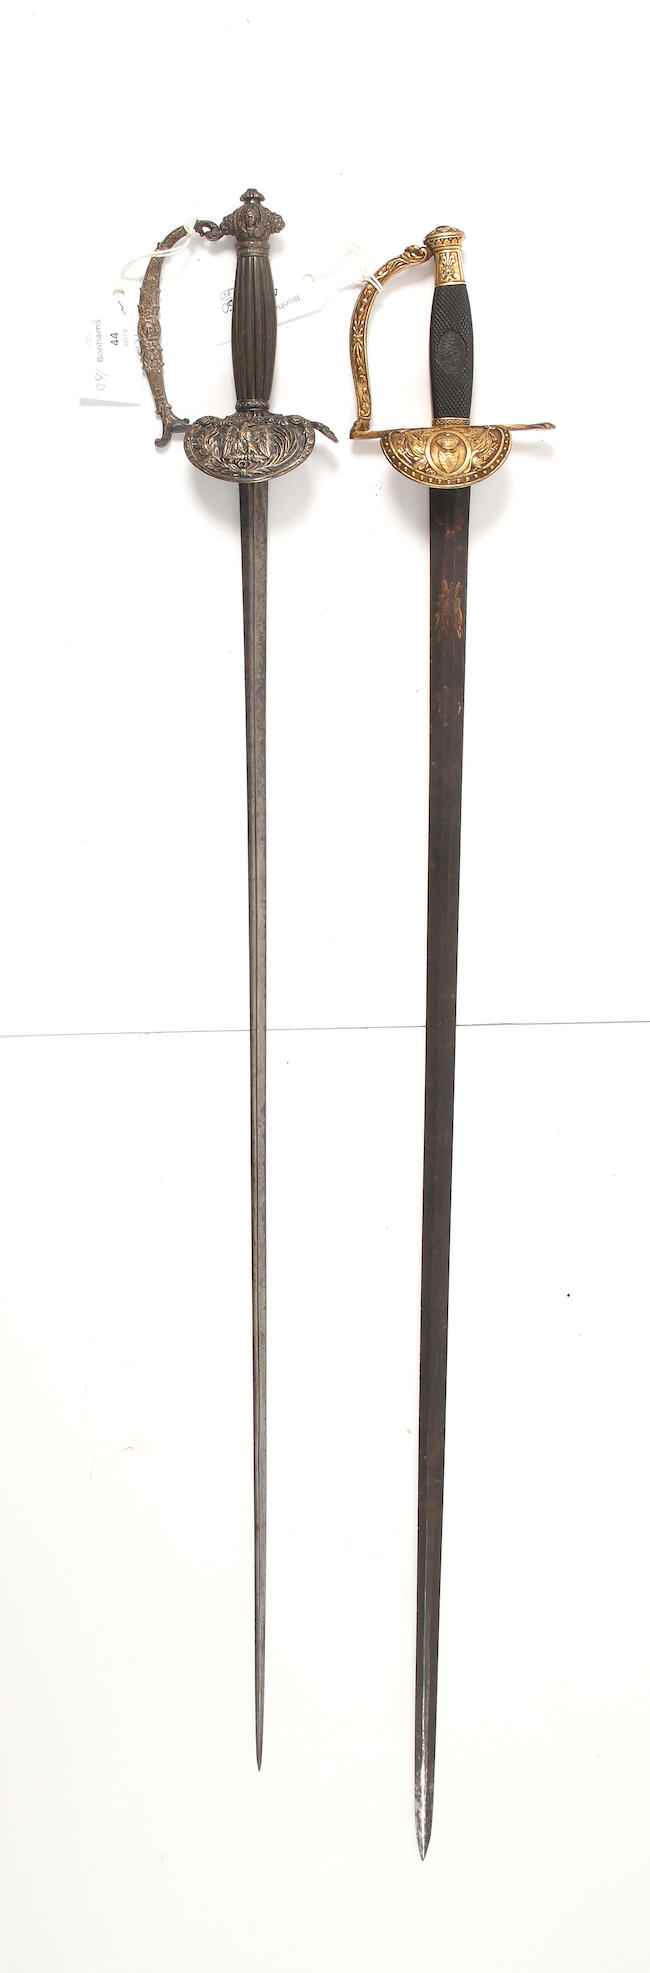 A Saxe Coburg Court Sword